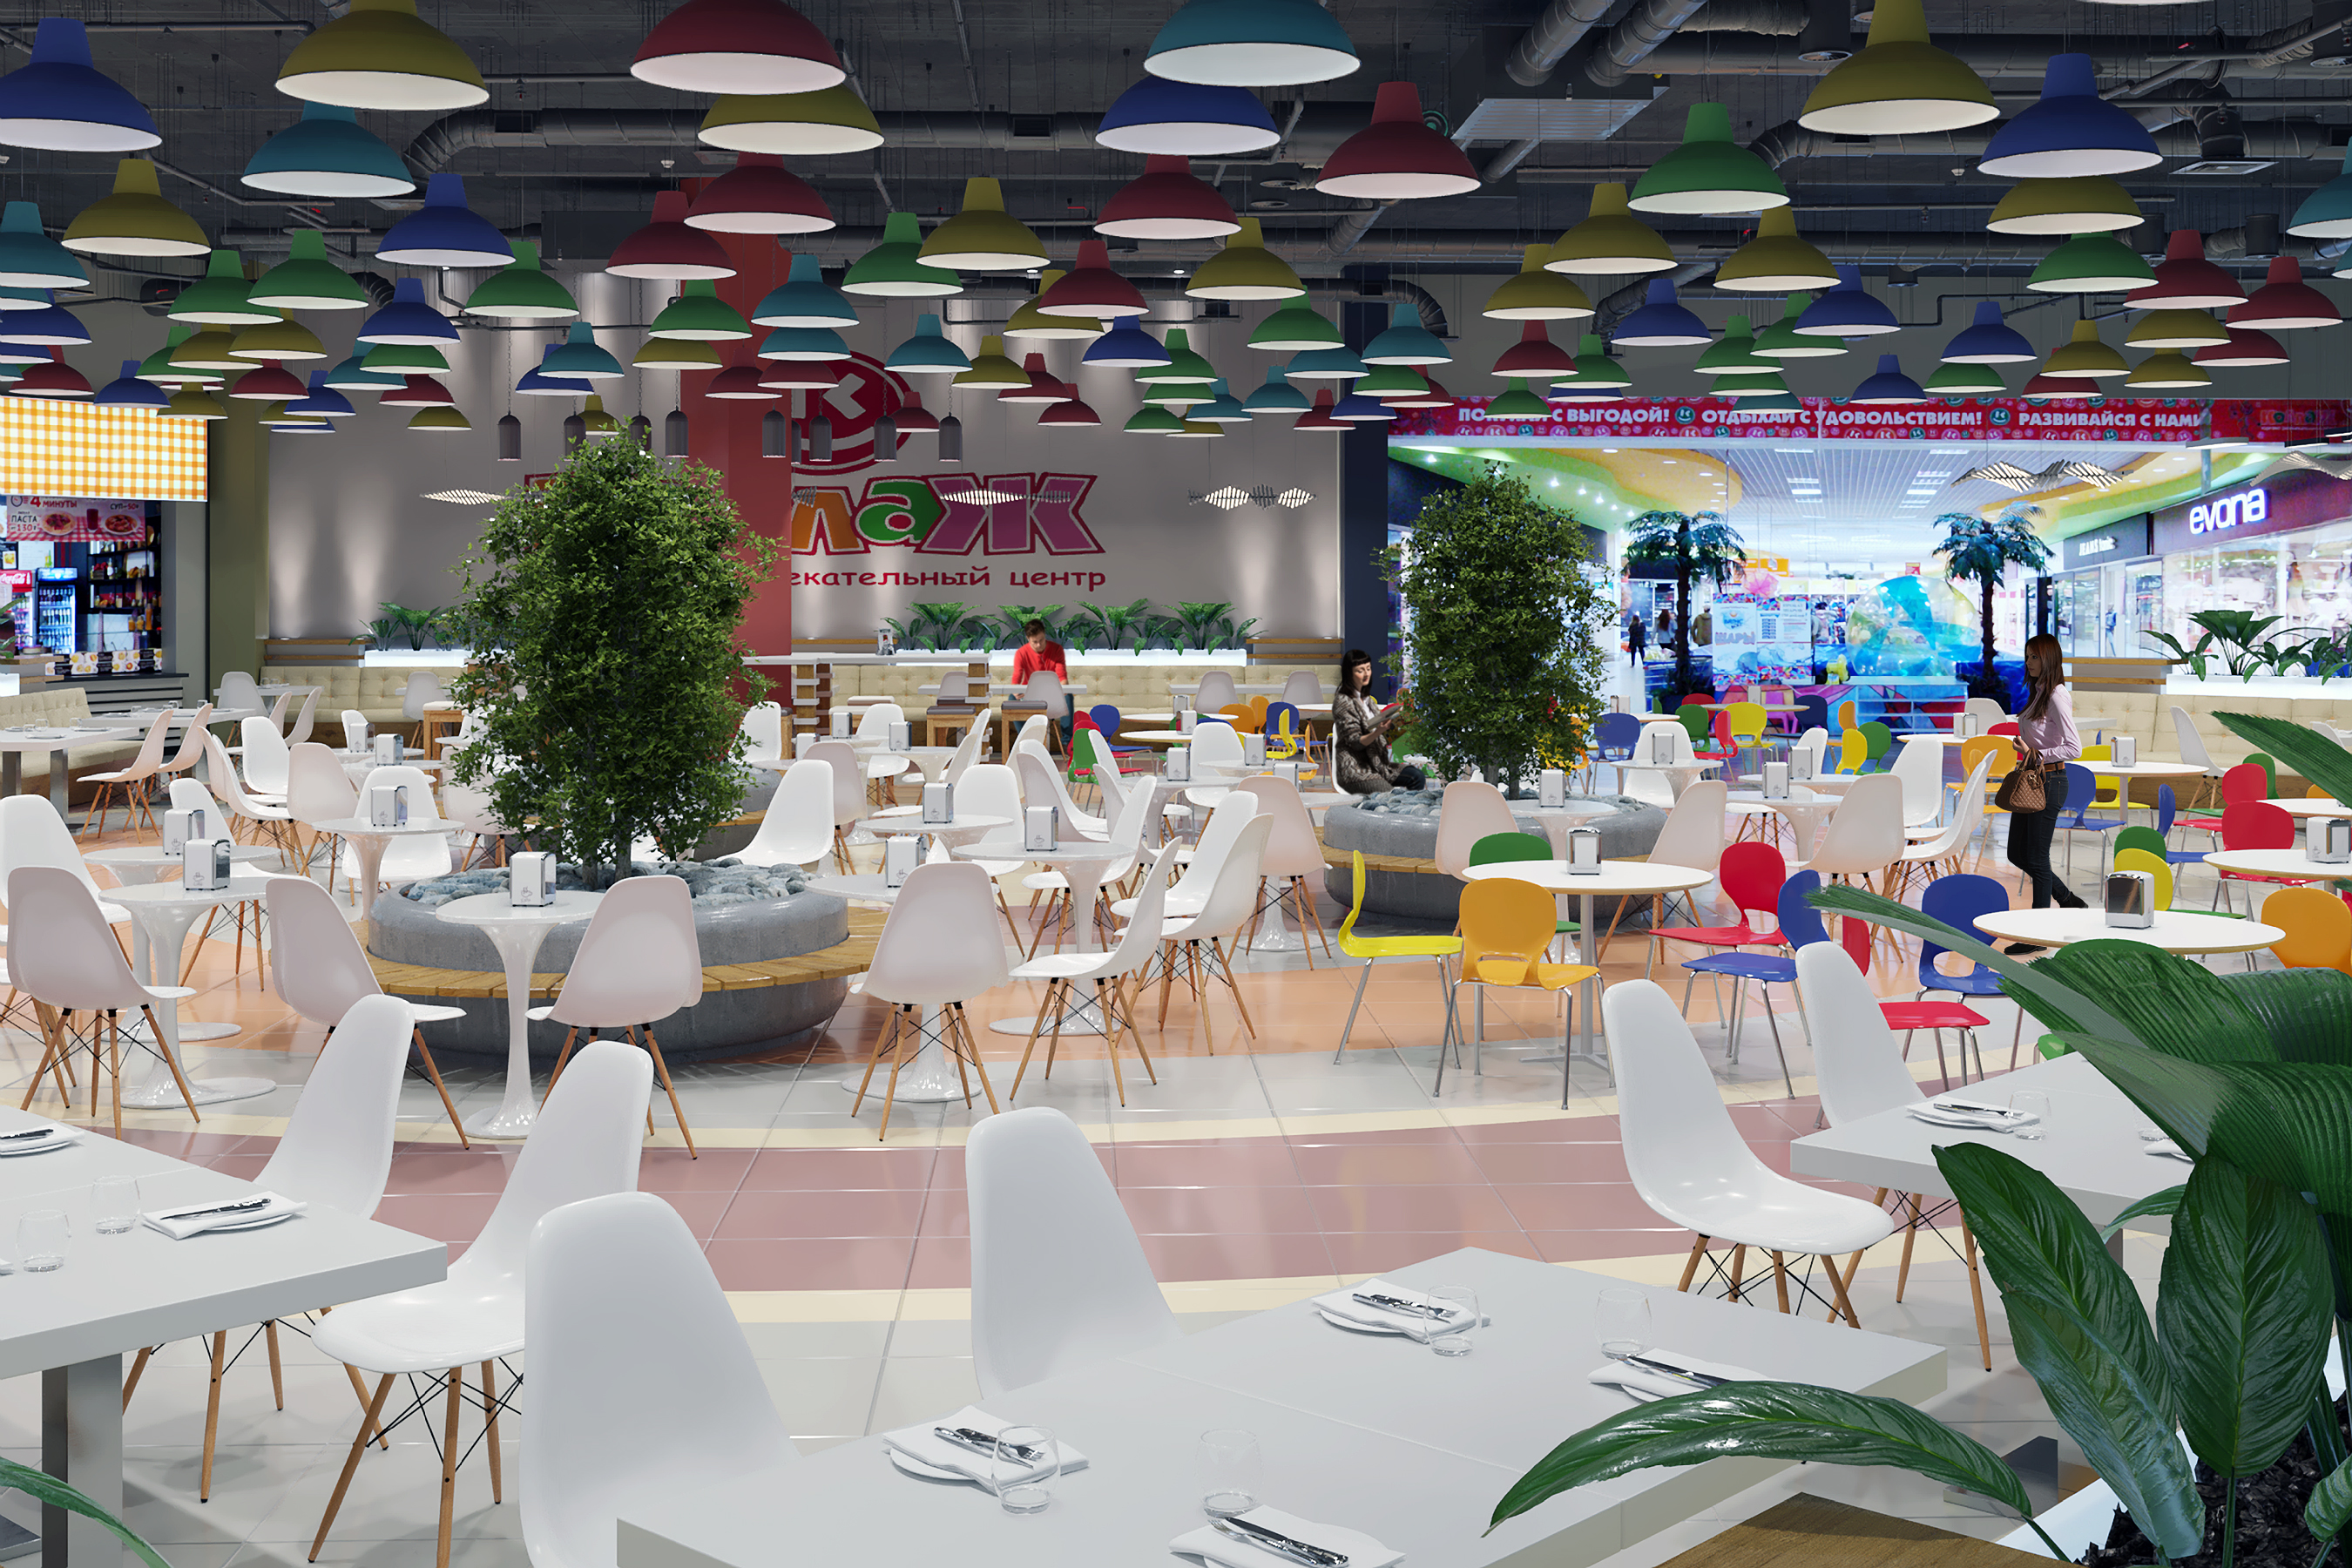 Foodcourt au centre commercial "Kollaz" dans 3d max corona render image